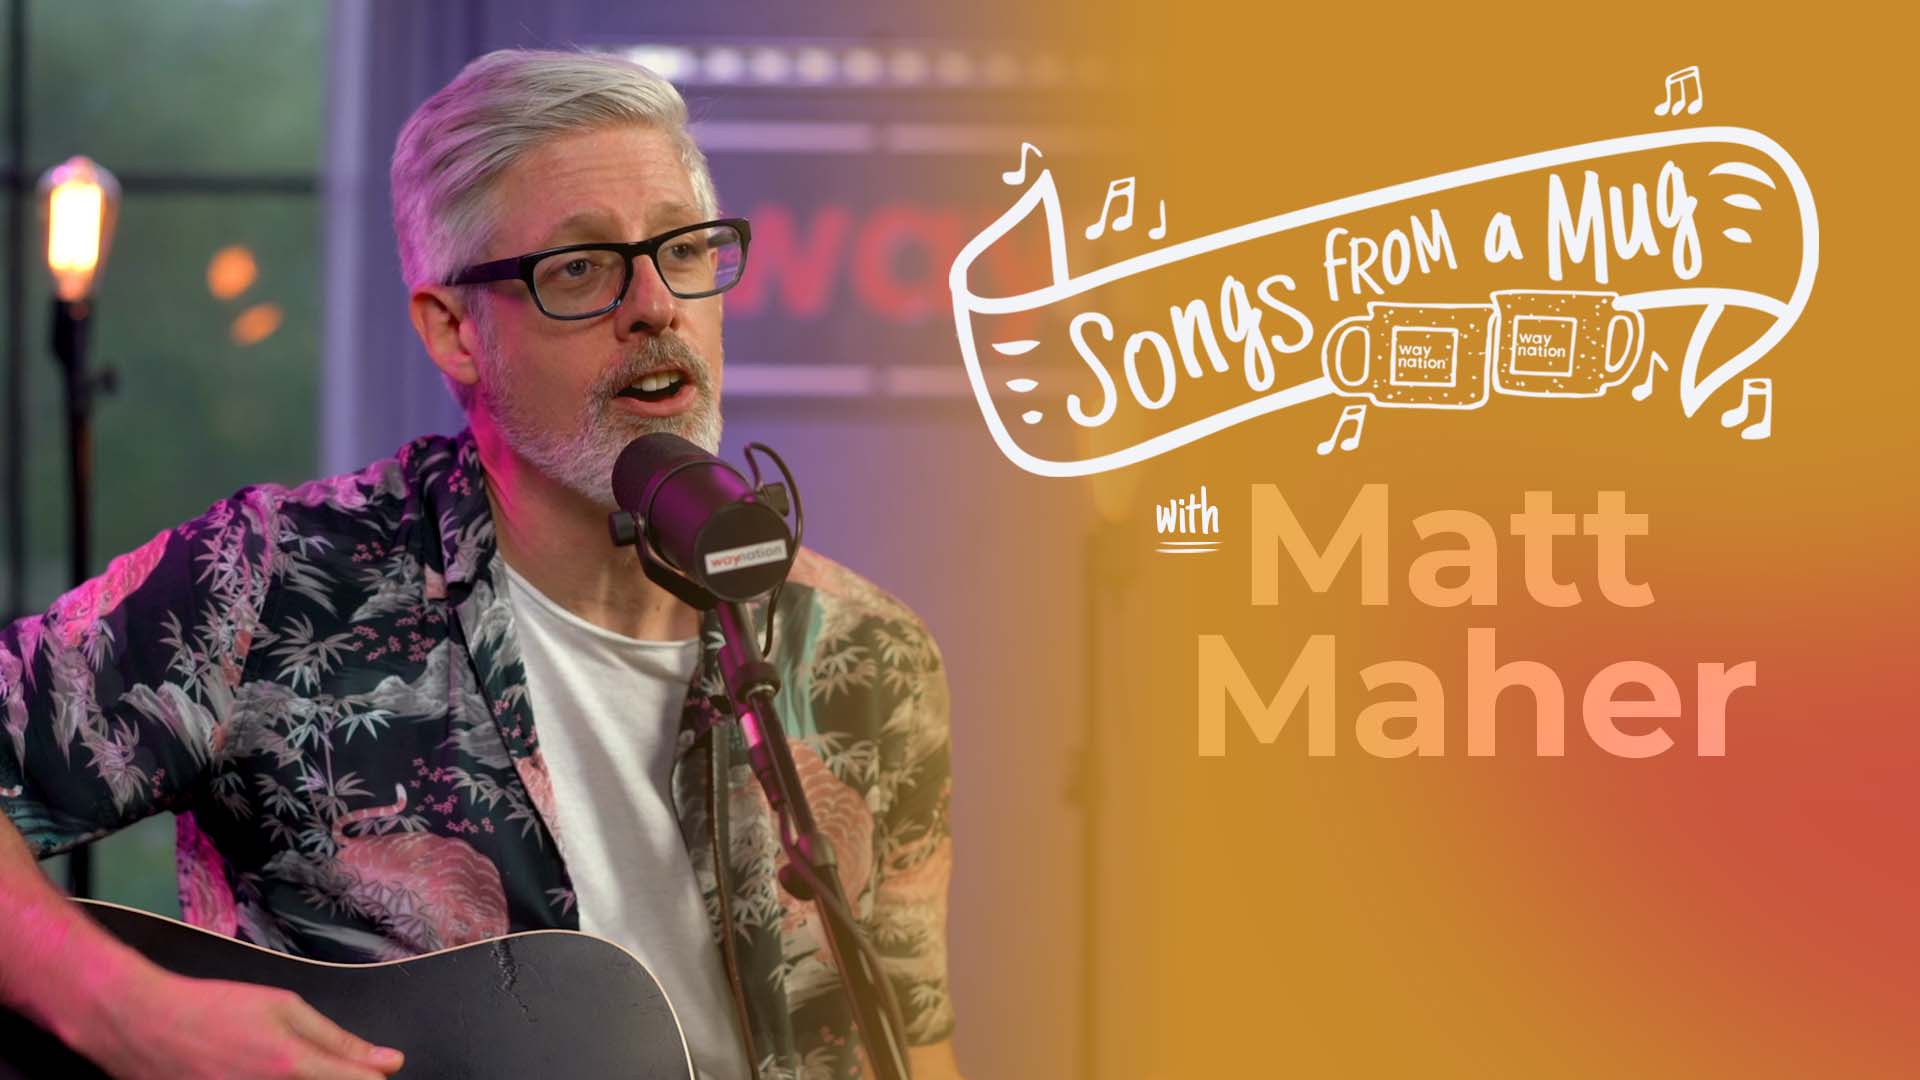 Matt Maher Songs From a Mug